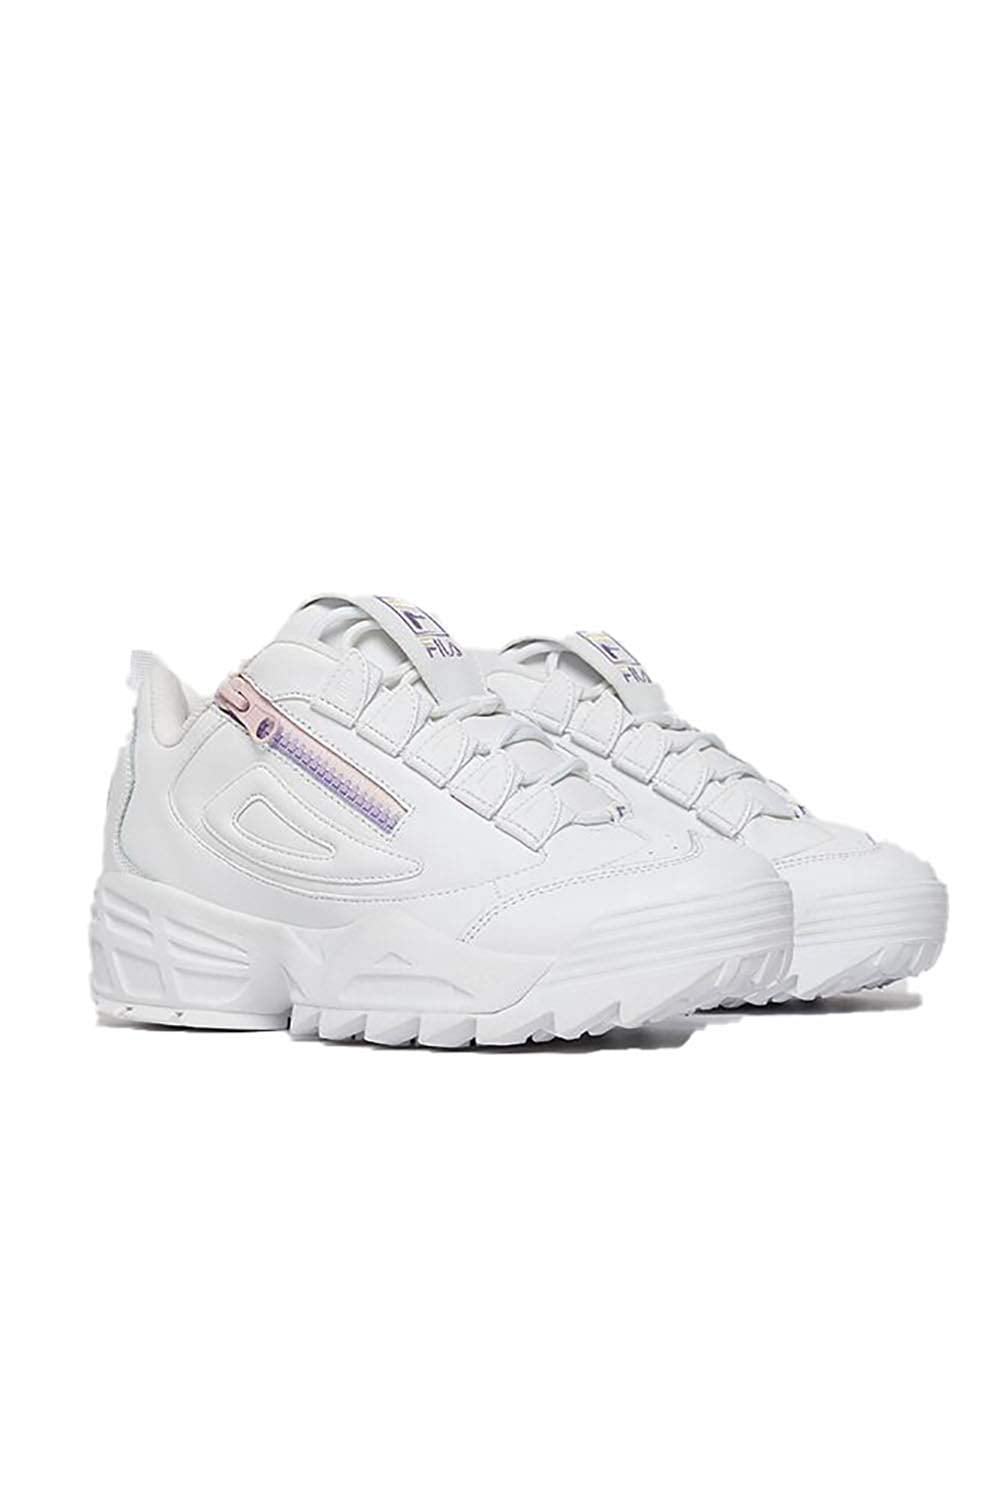 Zip Sneaker, Adult, White/Purple/Pink 